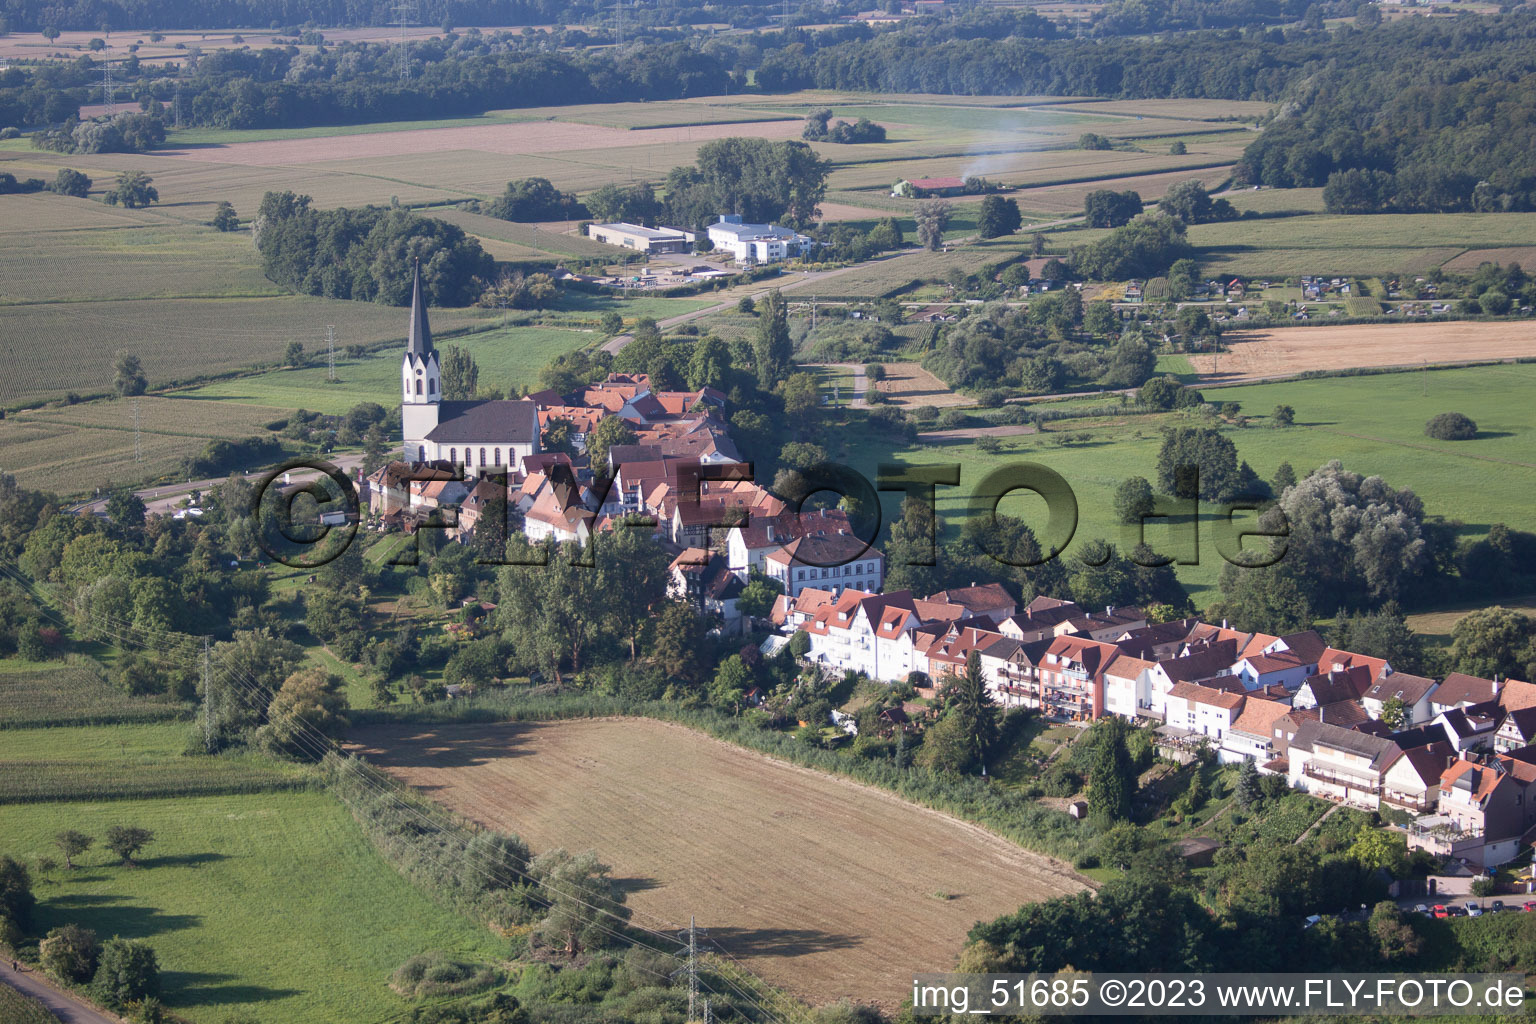 Jockgrim im Bundesland Rheinland-Pfalz, Deutschland aus der Luft betrachtet